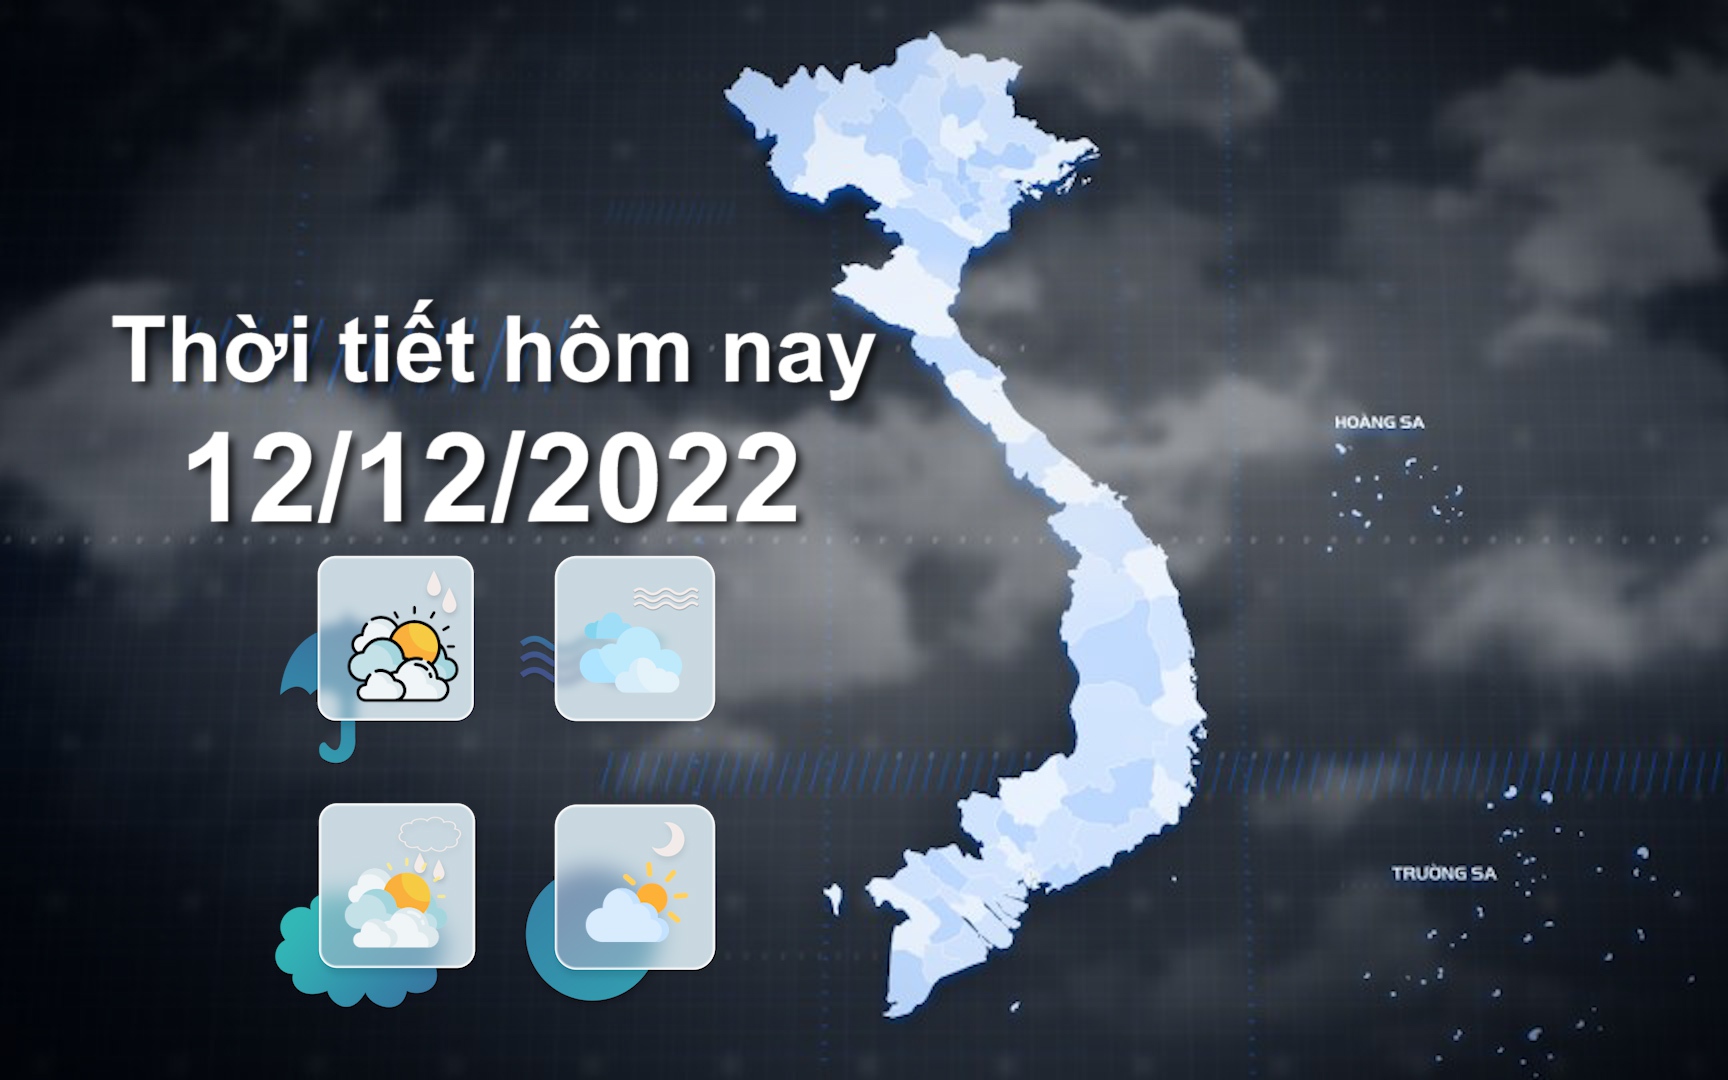 Thời tiết hôm nay 12/12/2022: Hà Nội sáng sớm có sương mù, trưa chiều hửng nắng